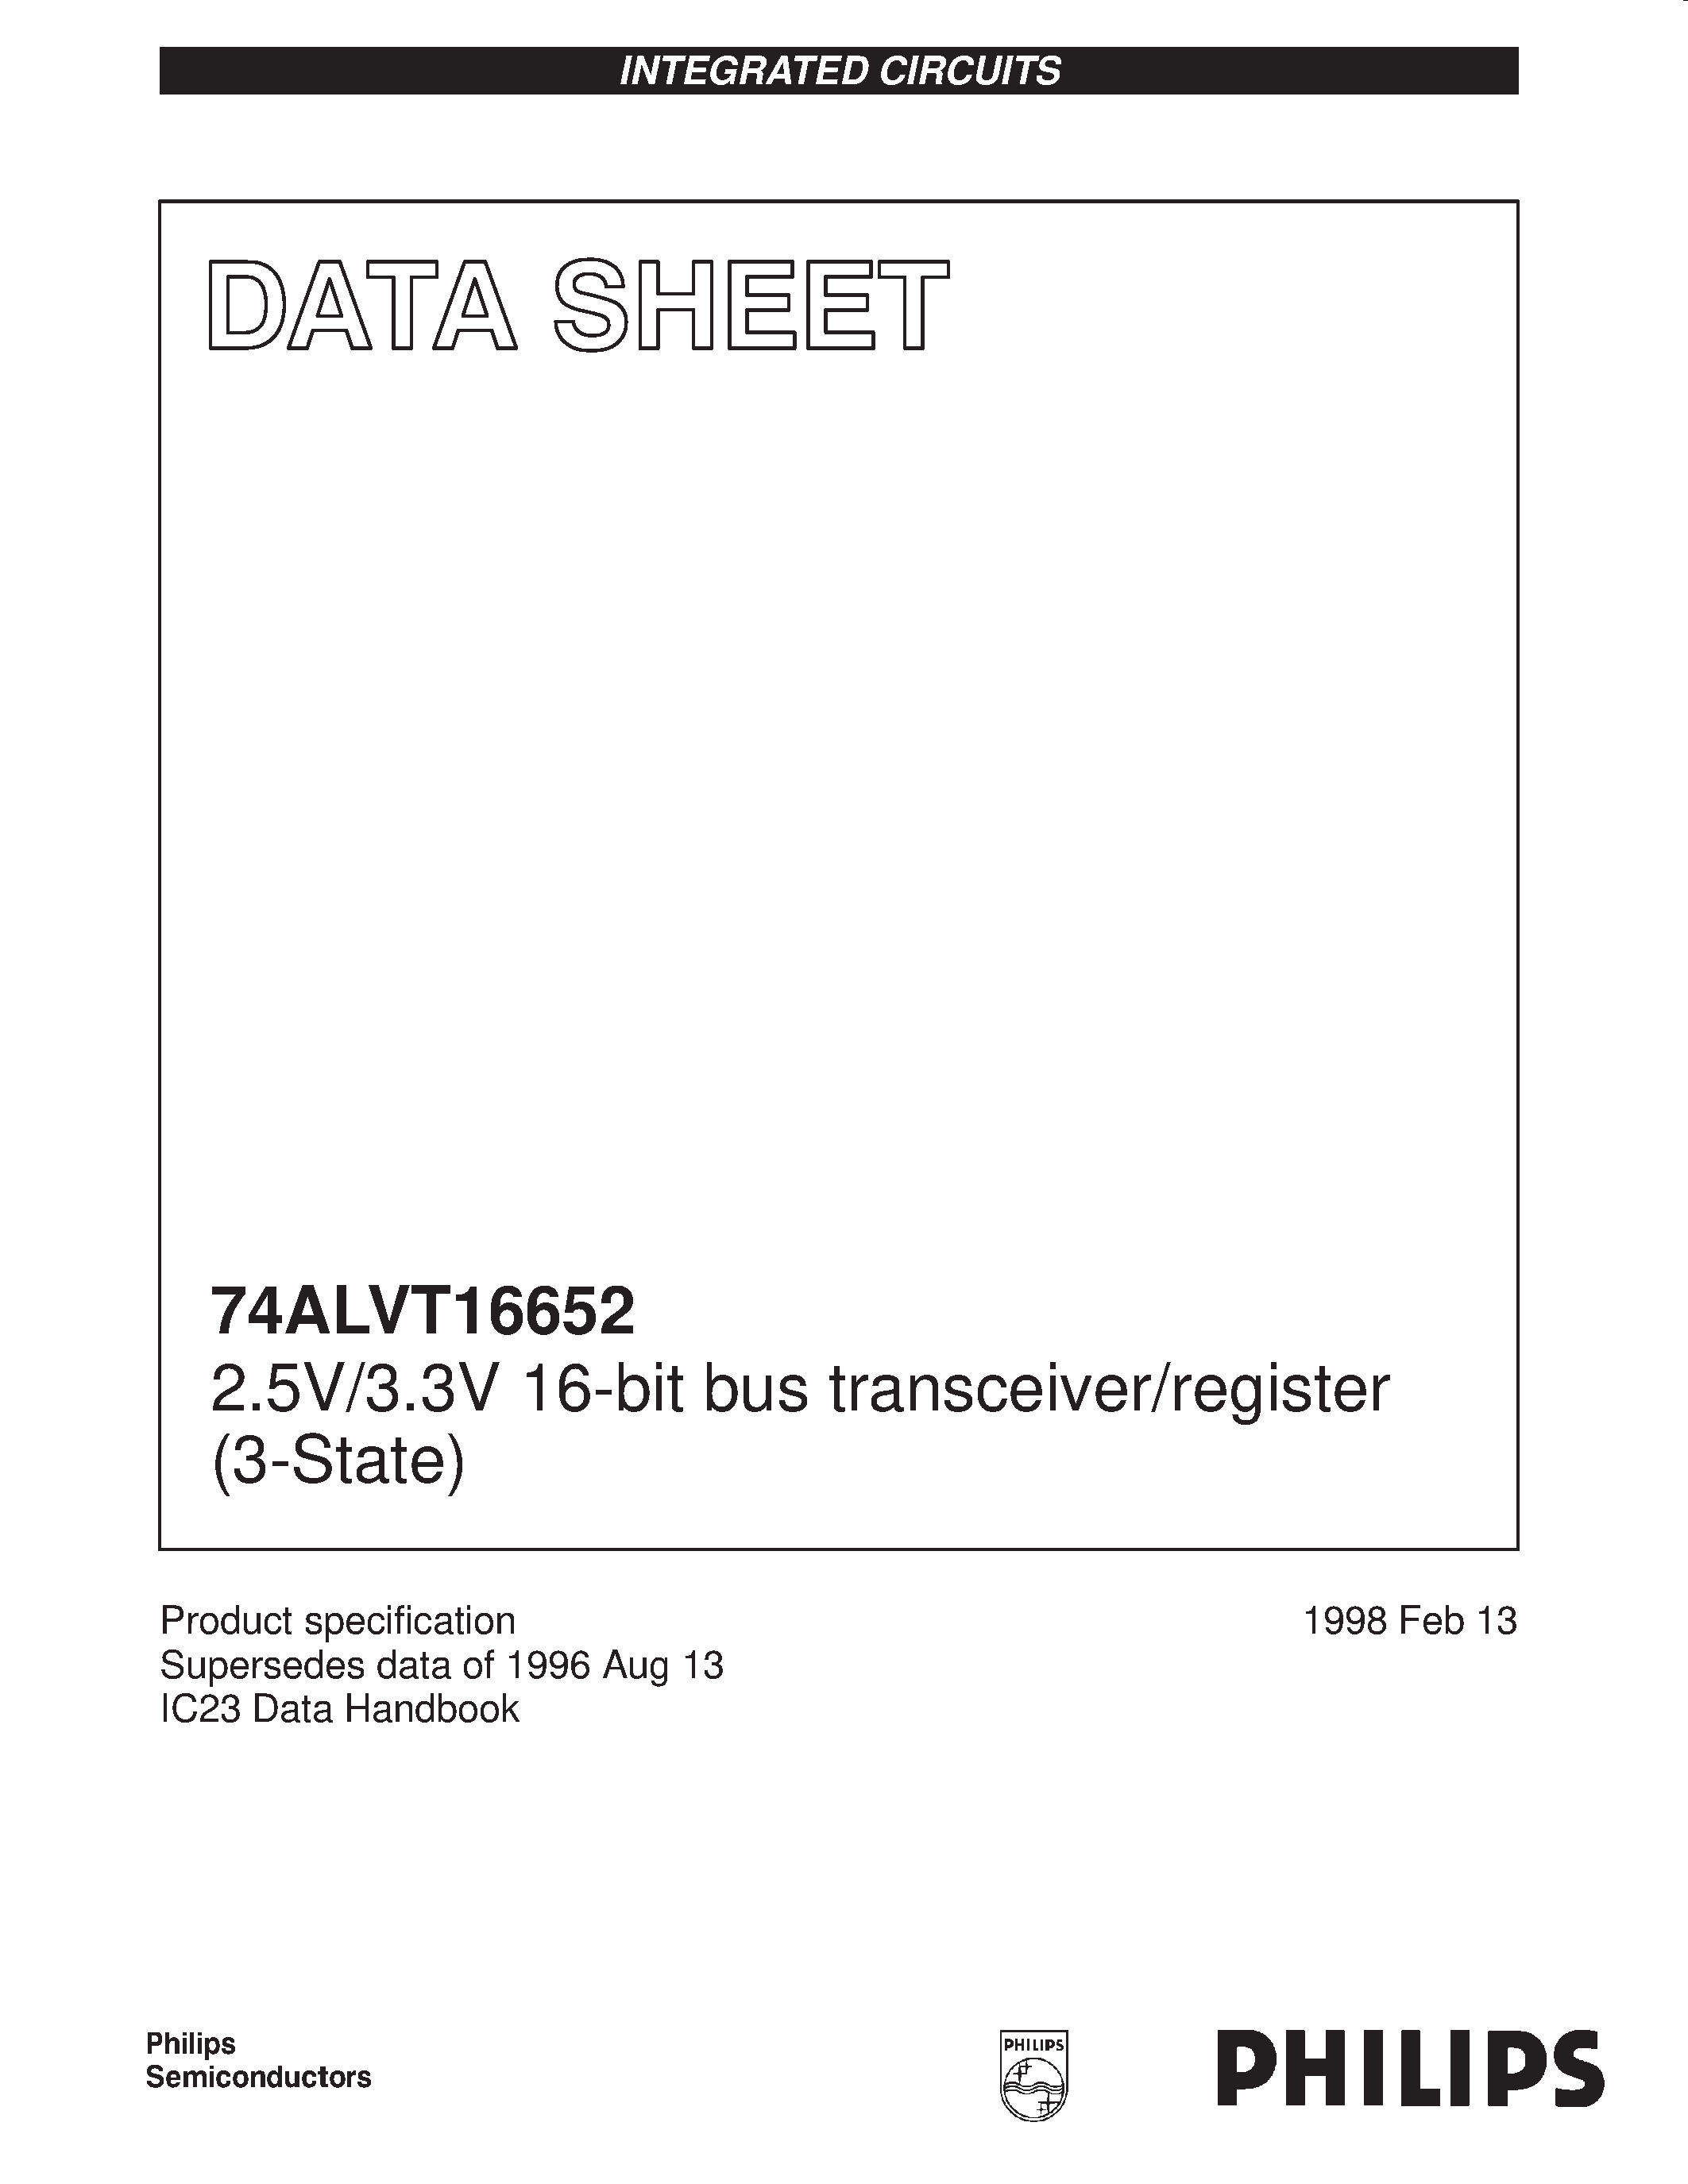 Даташит 74ALVT16652DGG - 2.5V/3.3V 16-bit bus transceiver/register 3-State страница 1